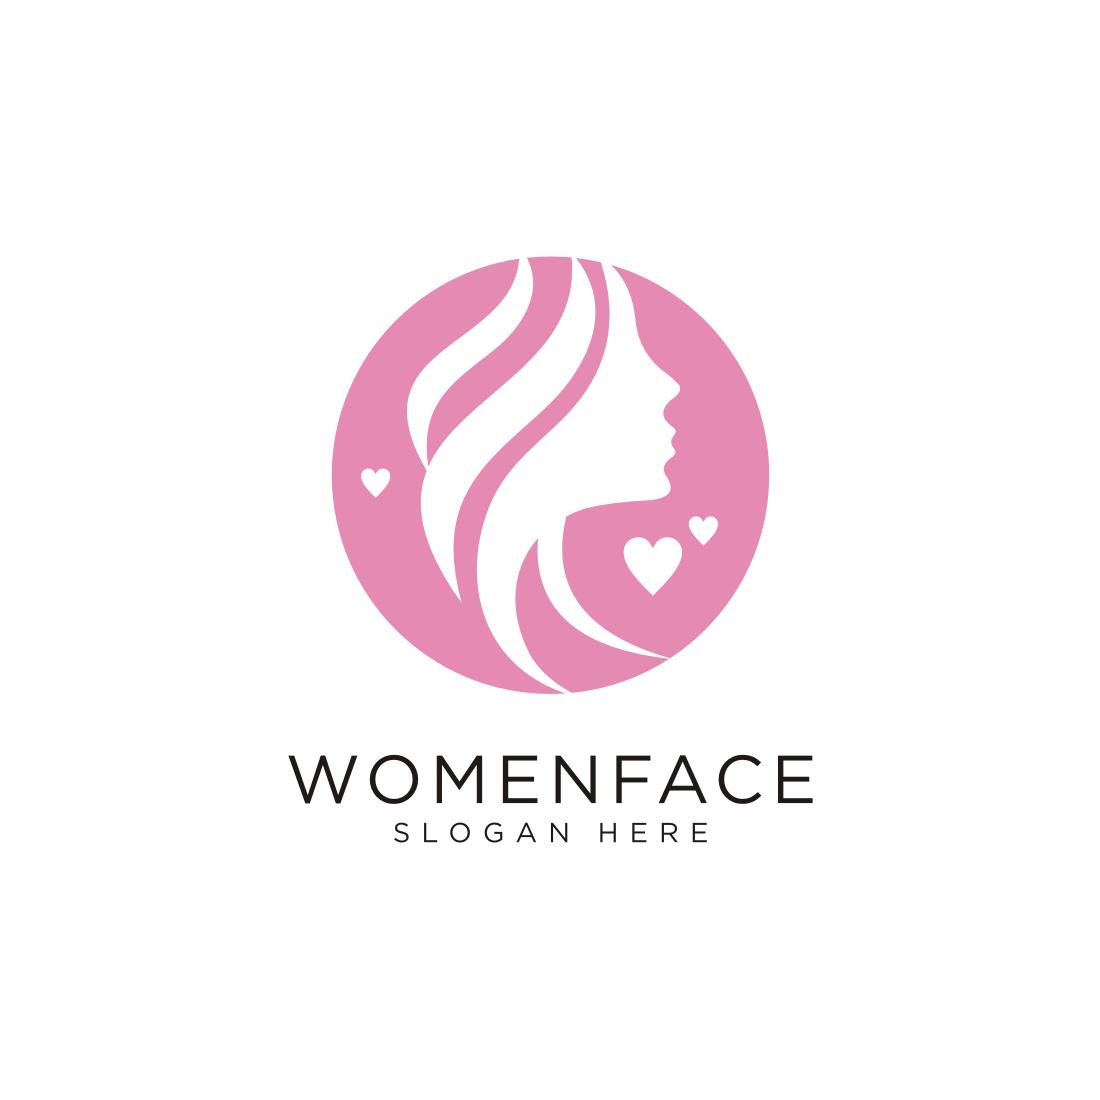 beauty face logos